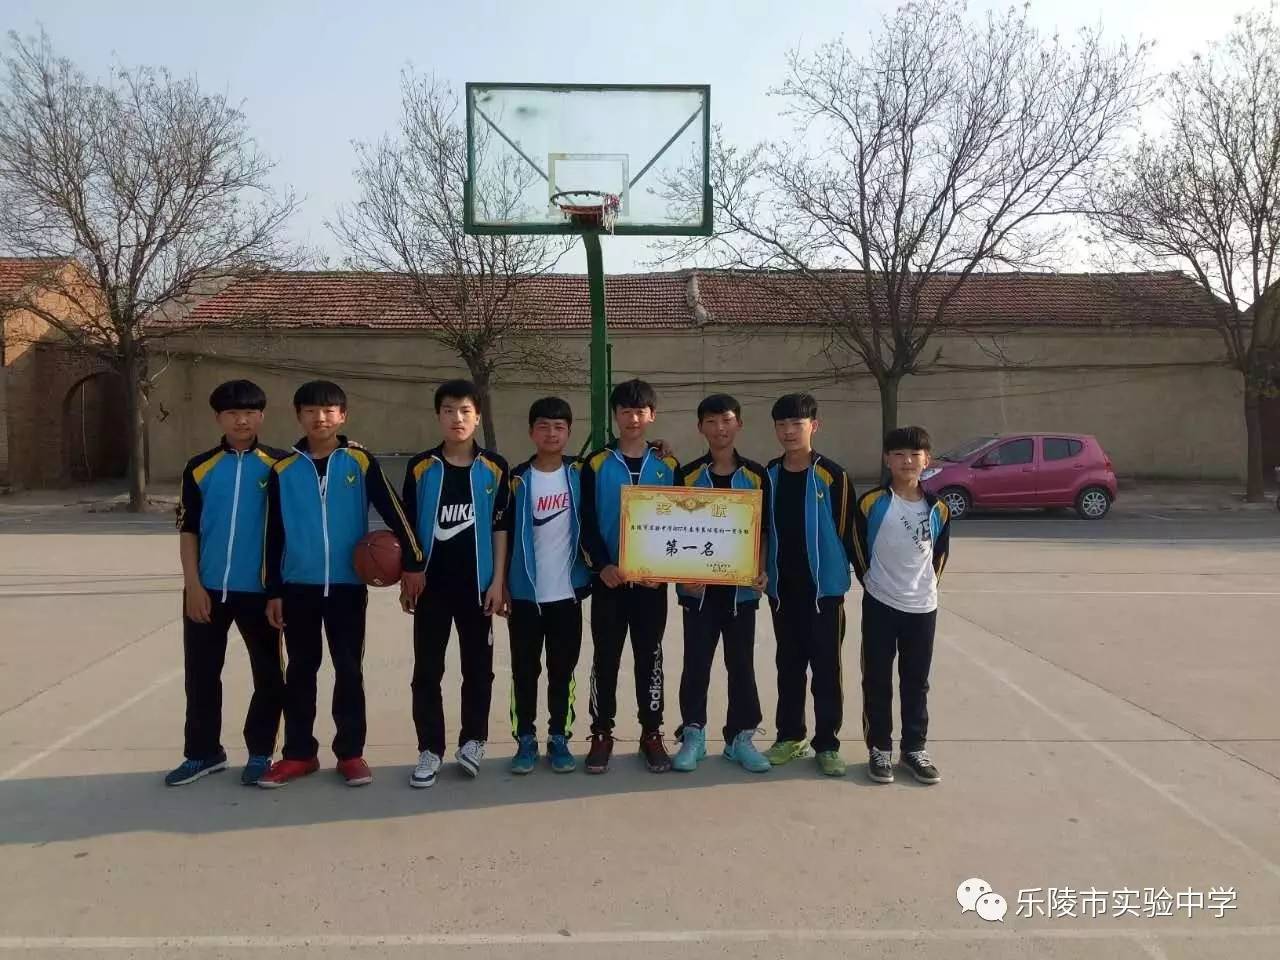 青春铸就活力 体育成就健康 -----乐陵市实验中学篮球